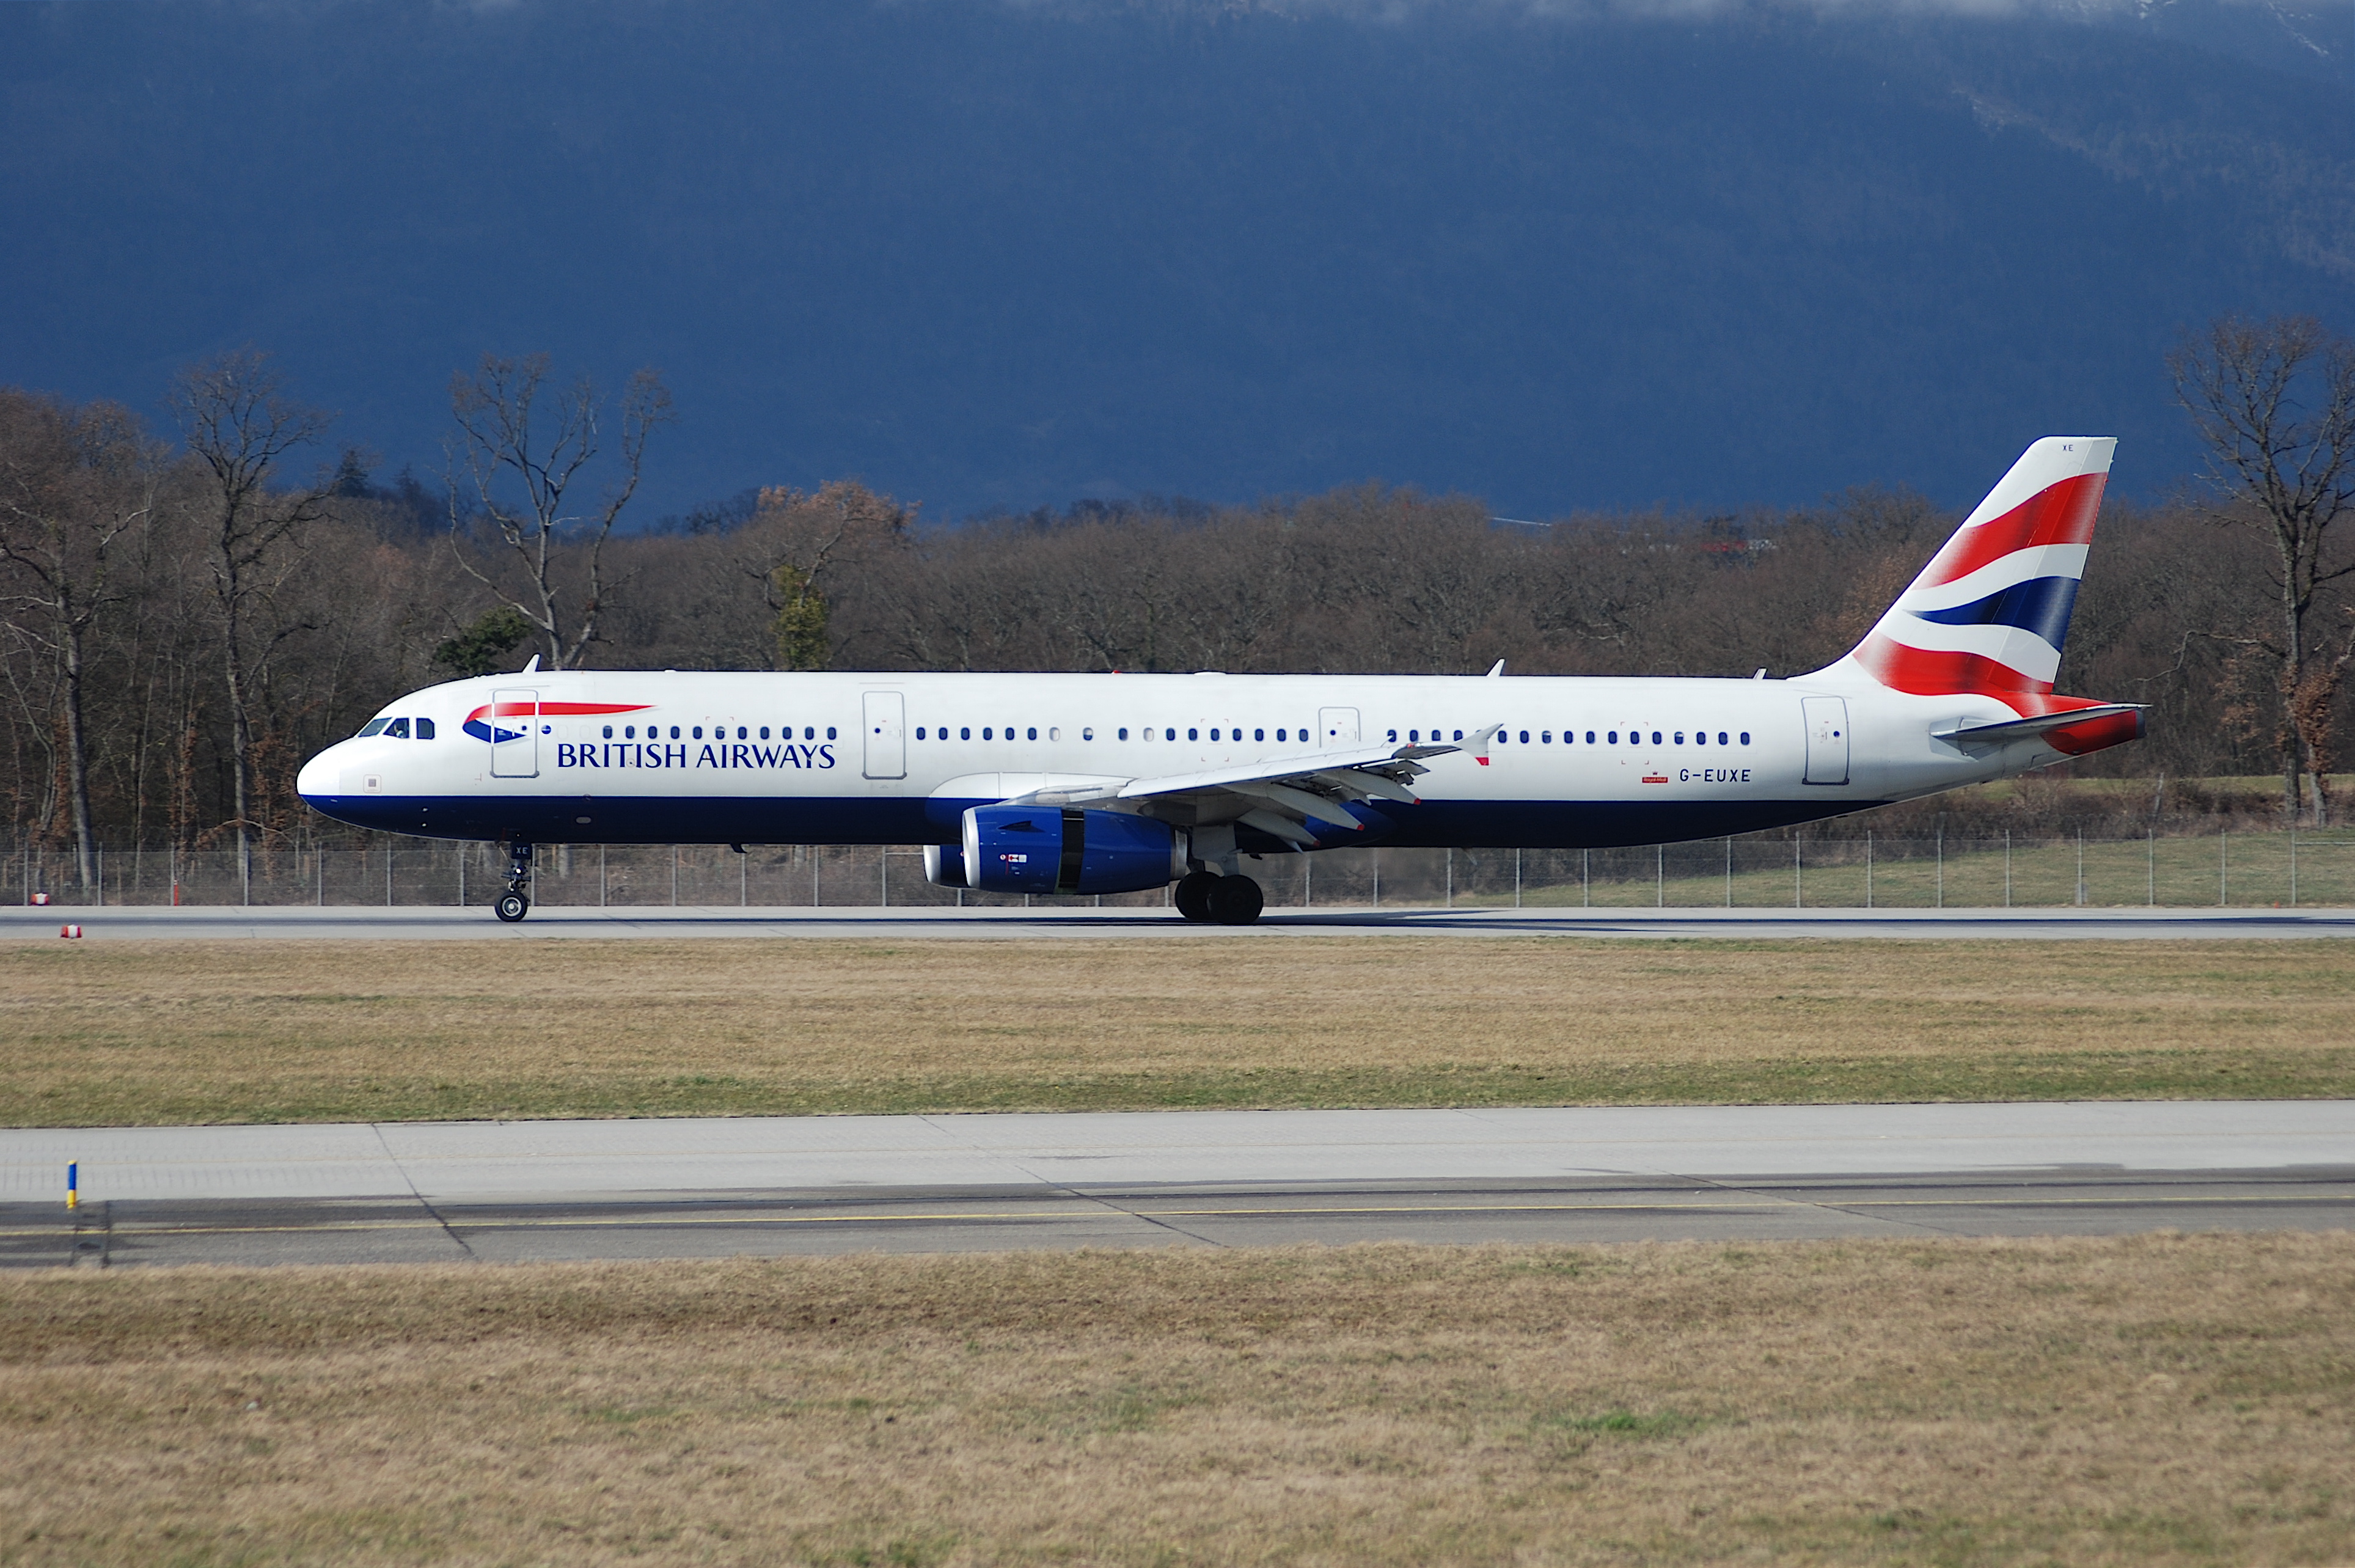 British Airways Airbus A321, G-EUXE@GVA,24.02.2007-451cp - Flickr - Aero Icarus